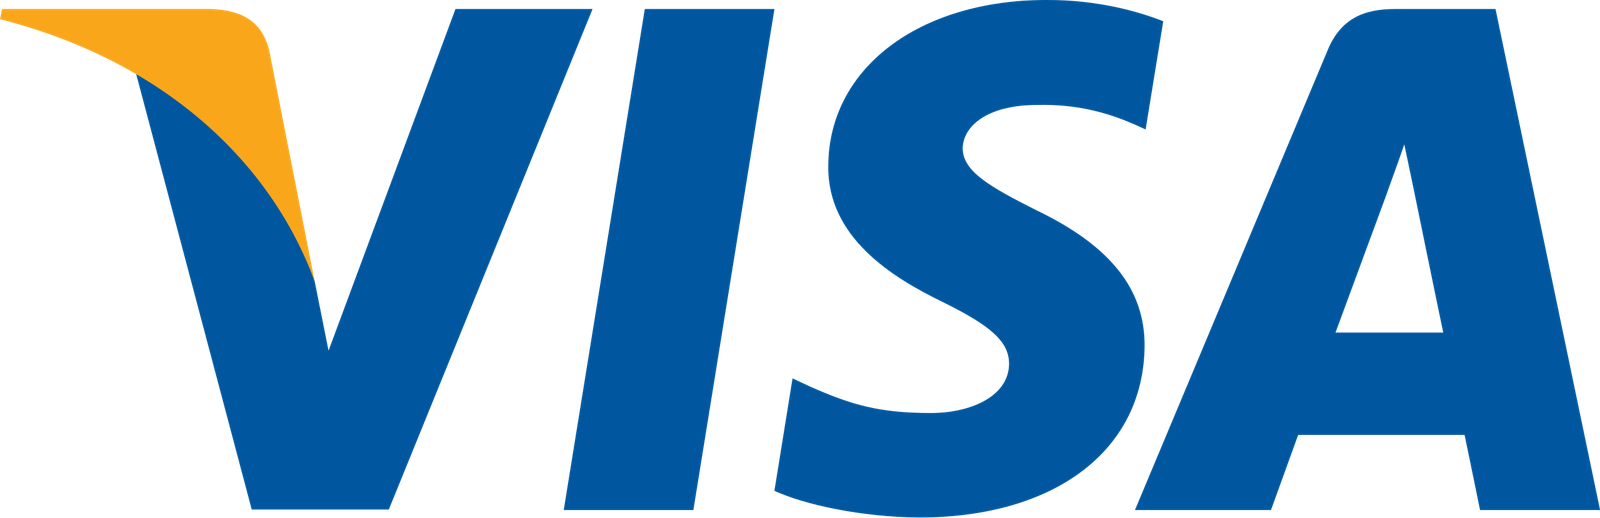 Visa Inc. logo.svg